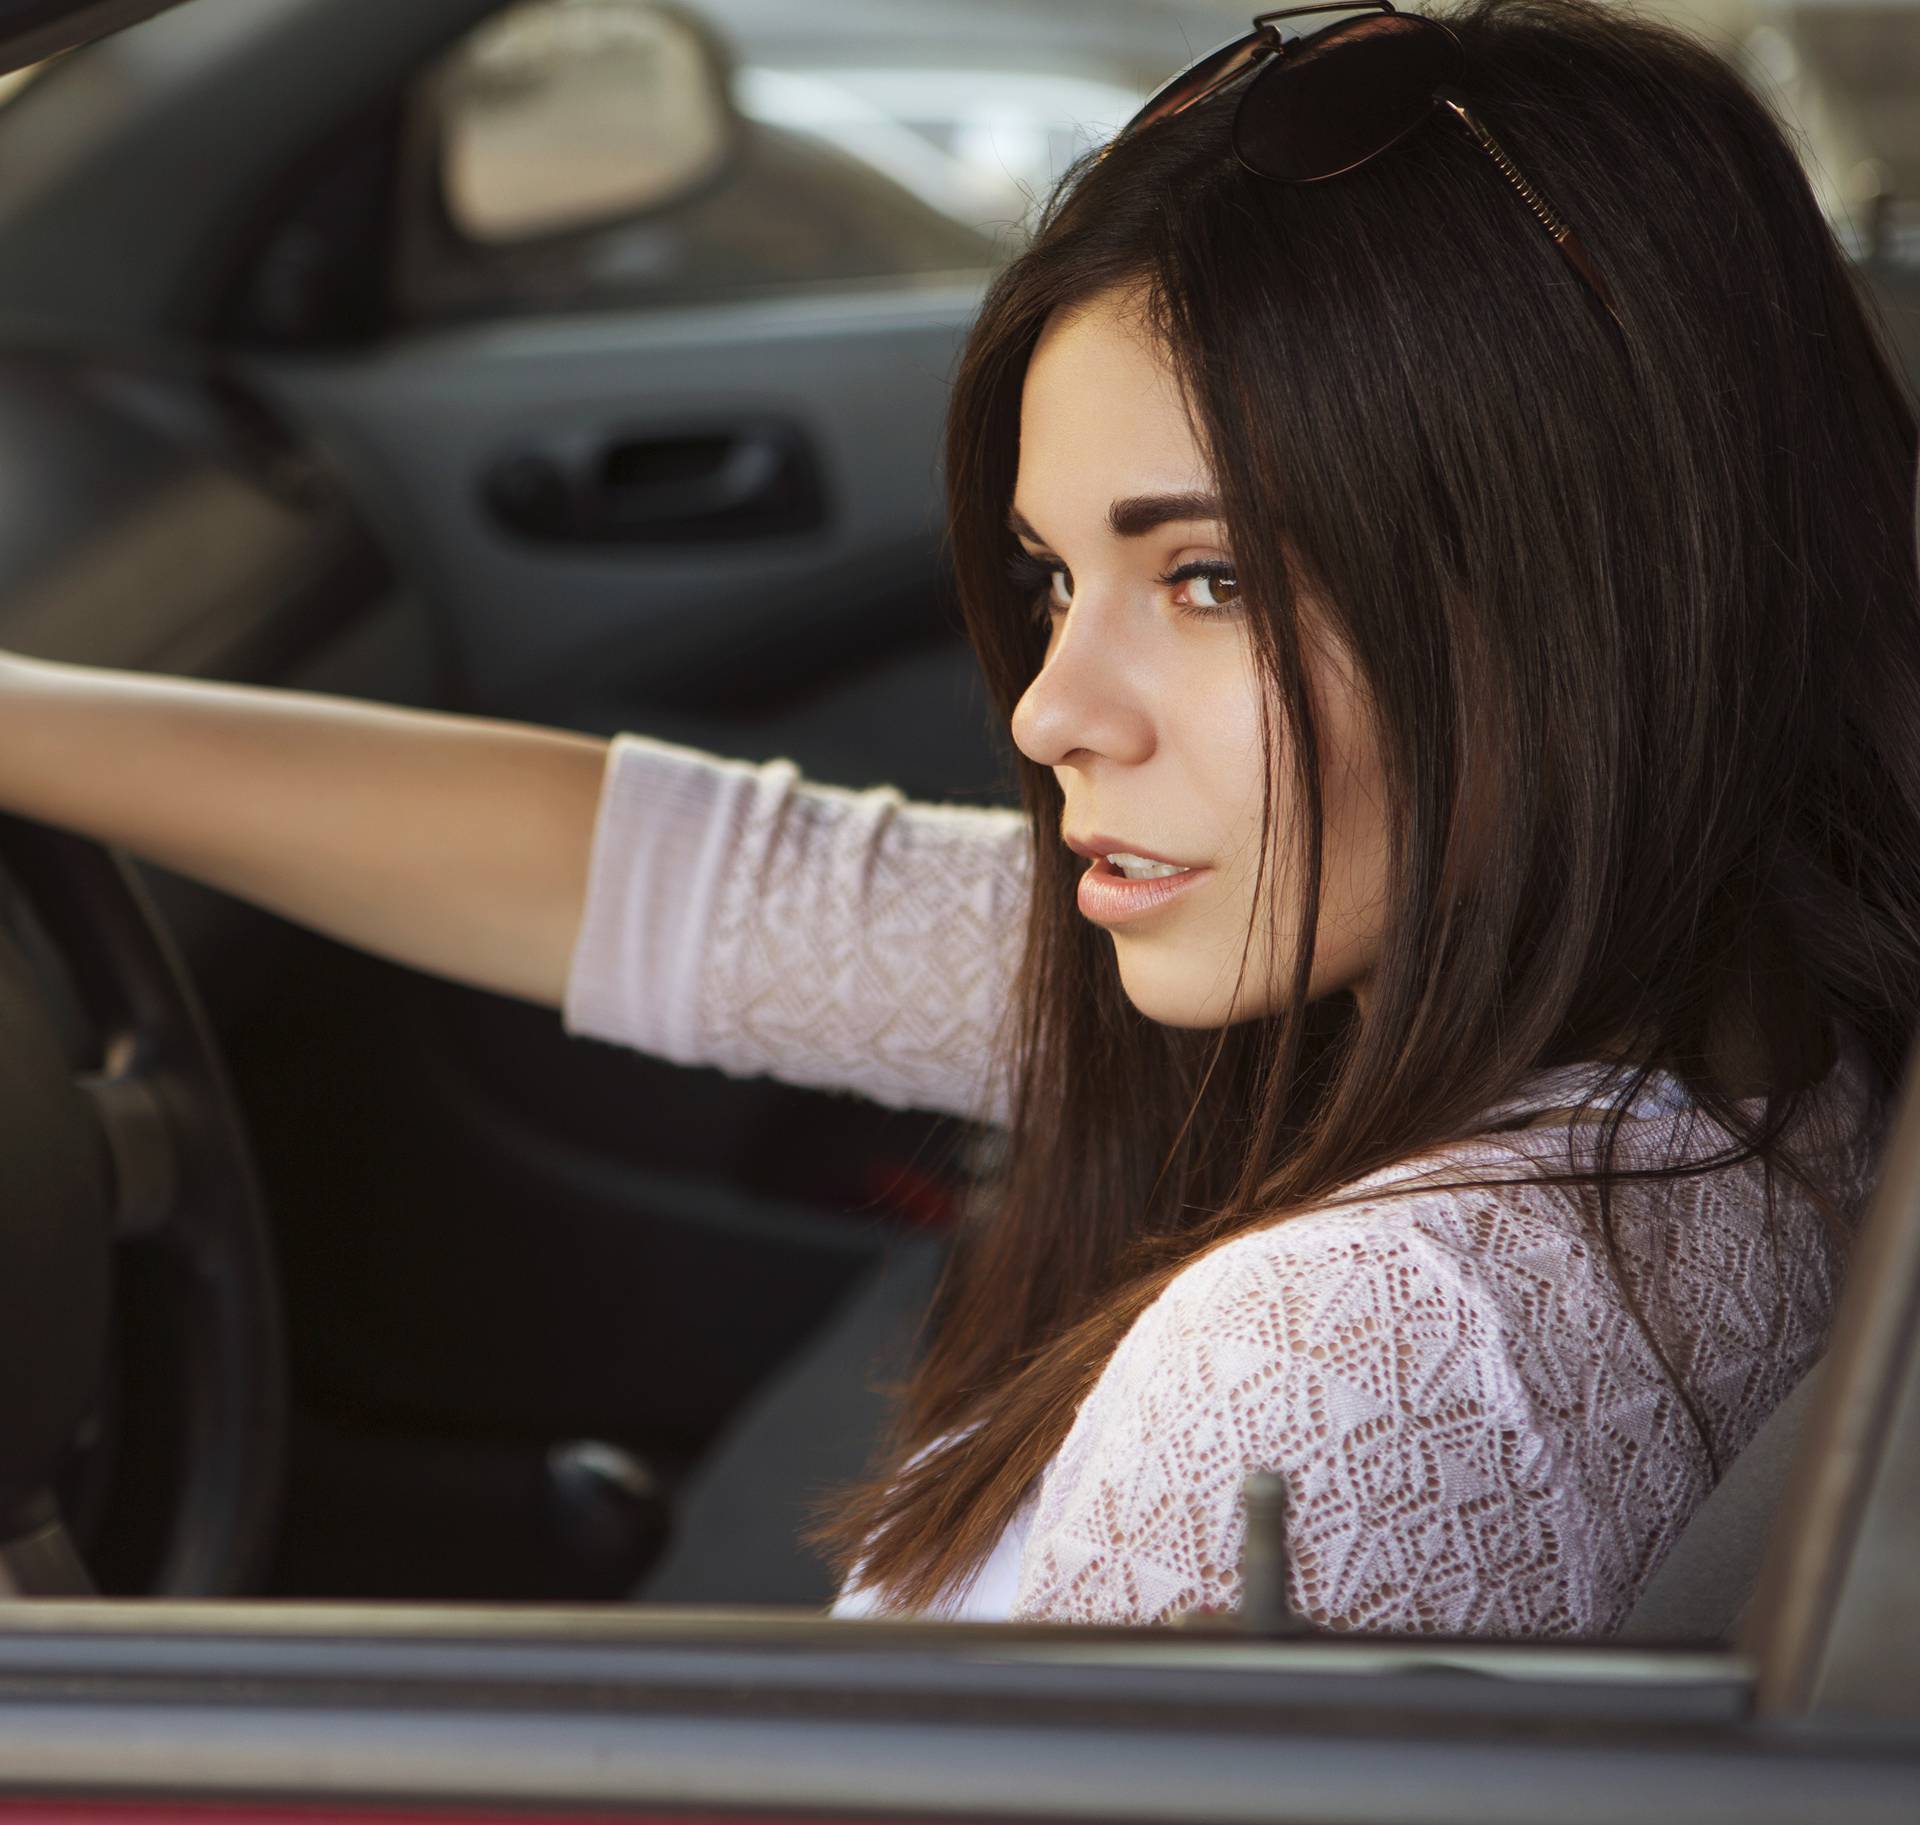 Žene vs muškarci za volanom - one su definitivno bolji vozači